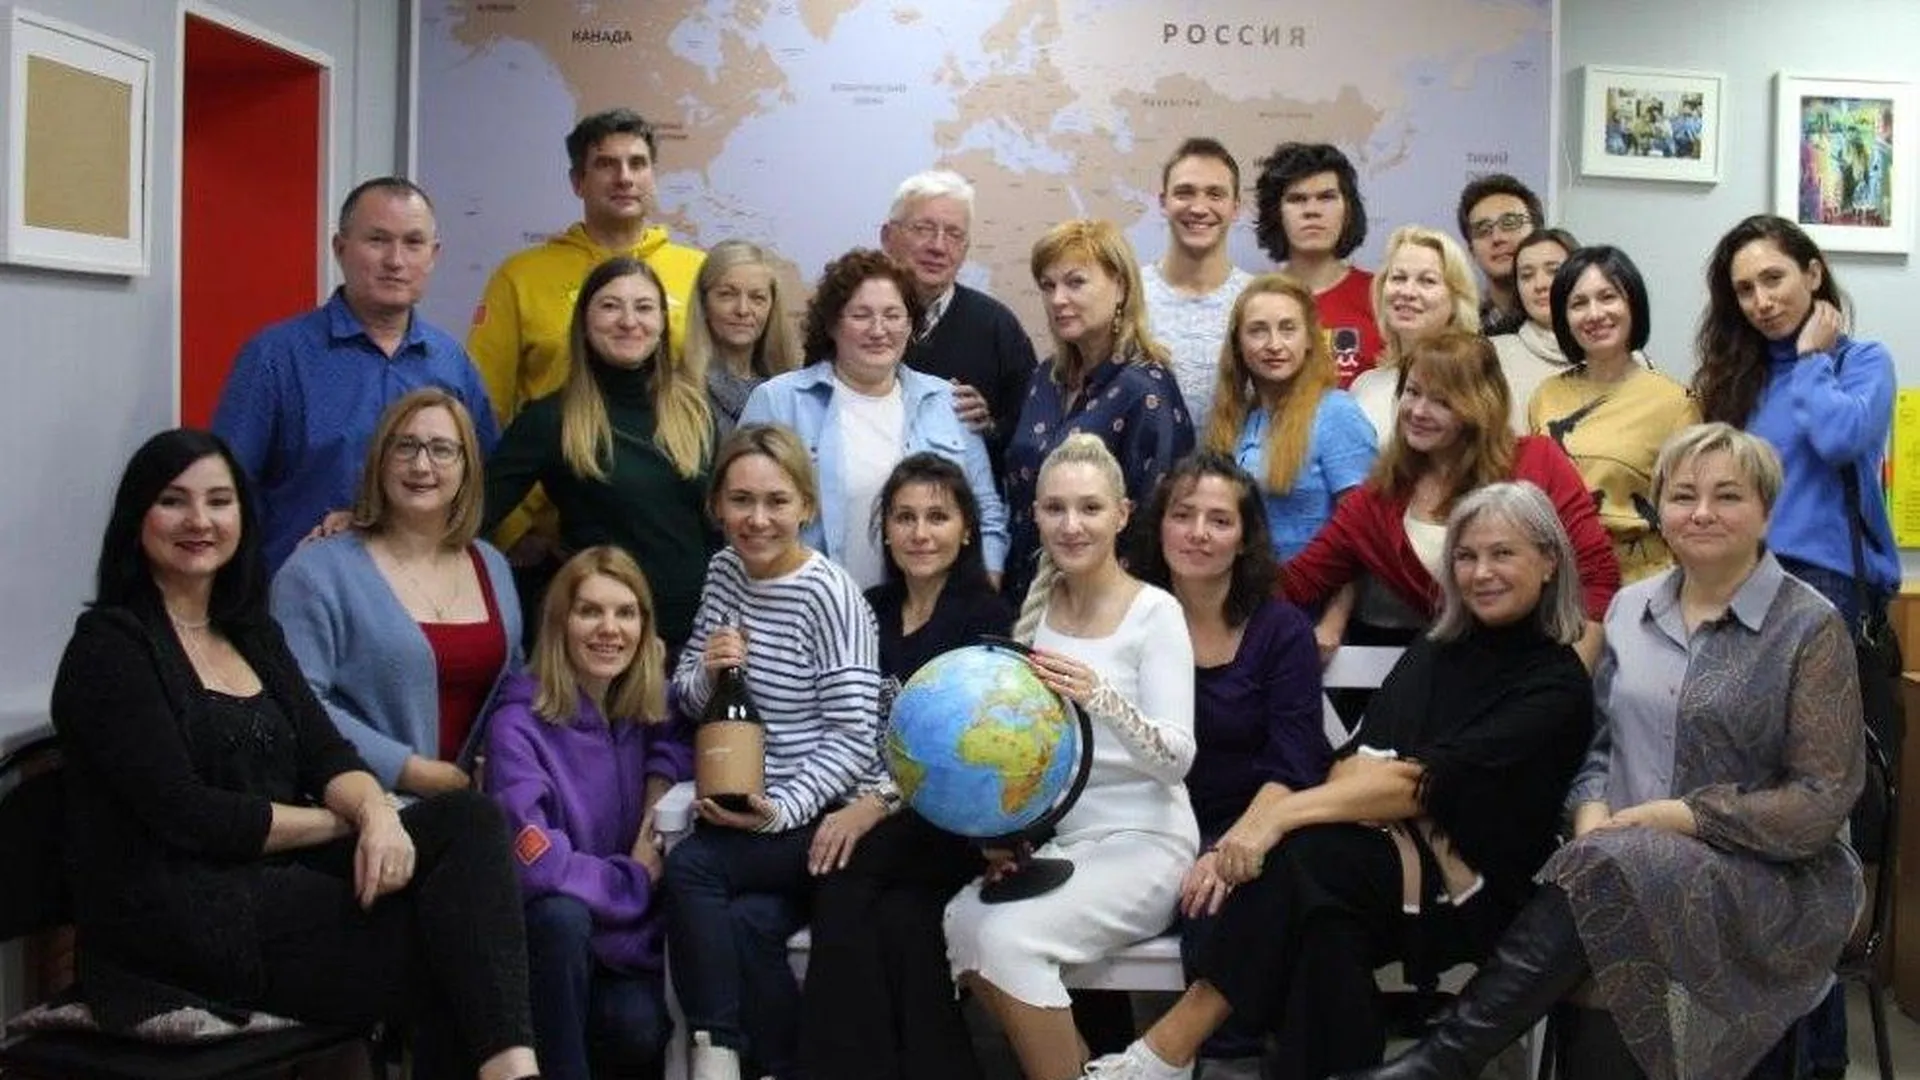 Авторы идеи и организаторы проекта «Имена русских людей на карте мира»